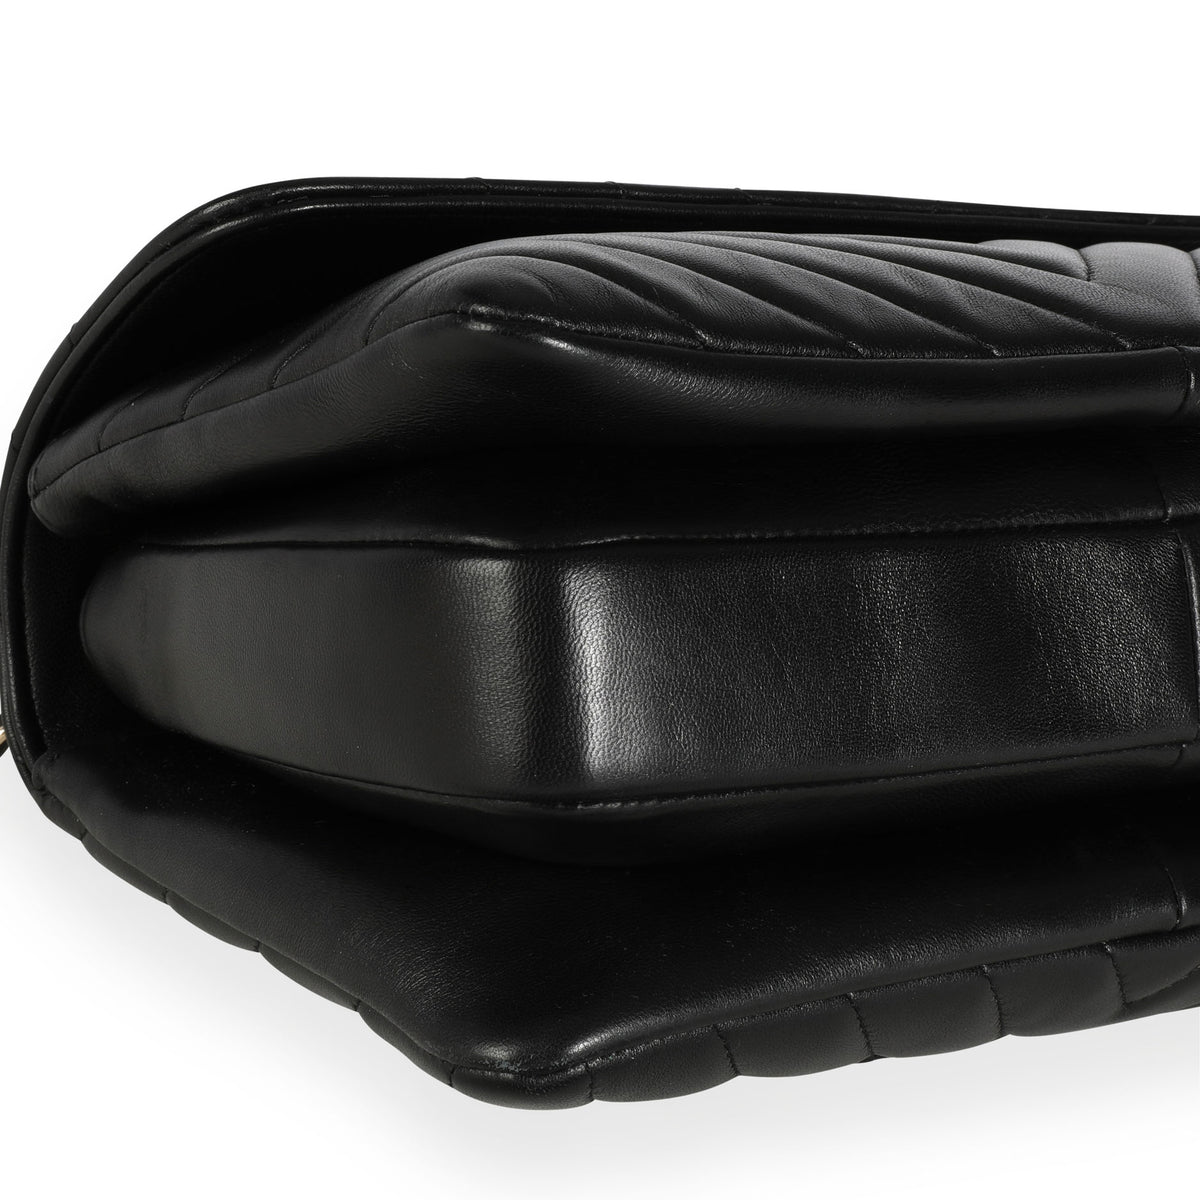 black chanel clutch purse